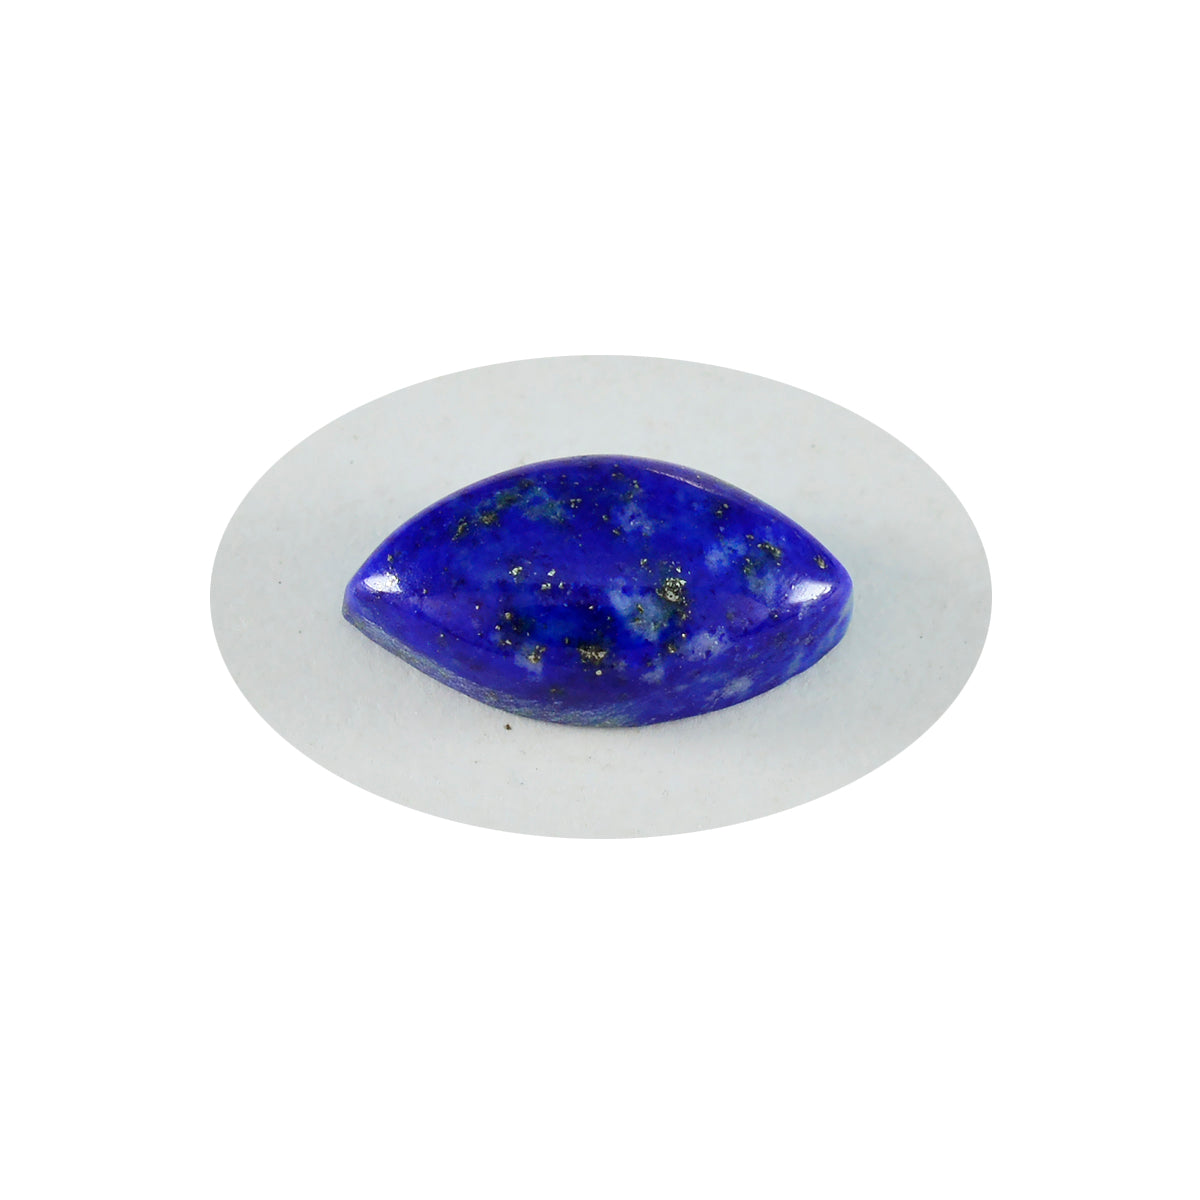 riyogems 1 шт. синий лазурит кабошон 9x18 мм форма маркиза красивое качество свободные драгоценные камни